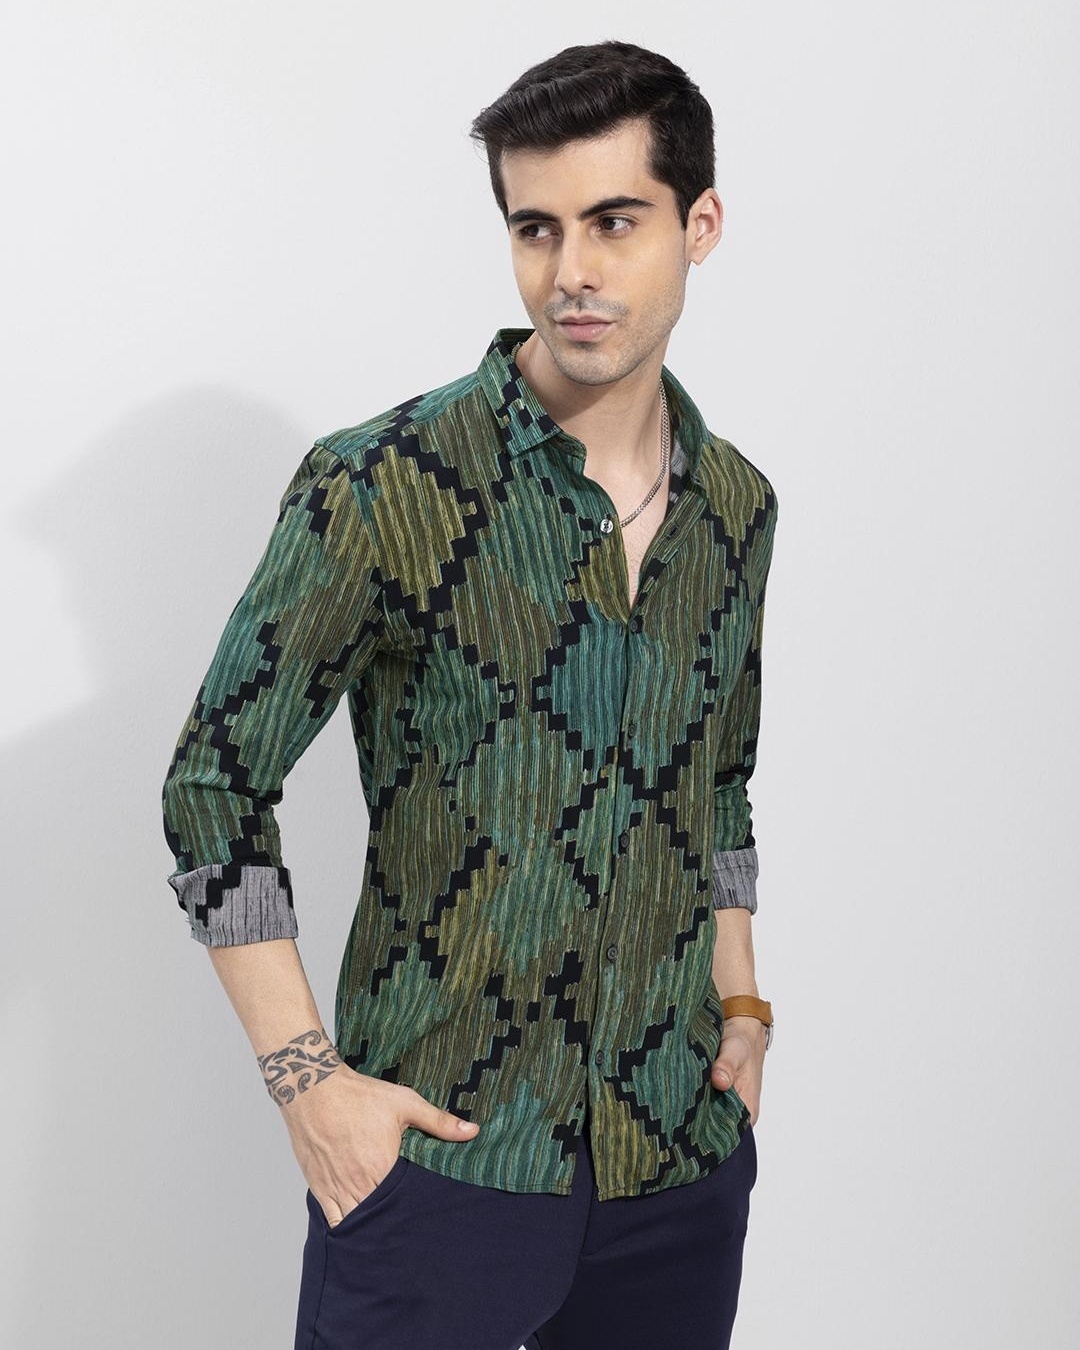 Buy Men's Green Geometric Printed Slim Fit Shirt Online at Bewakoof